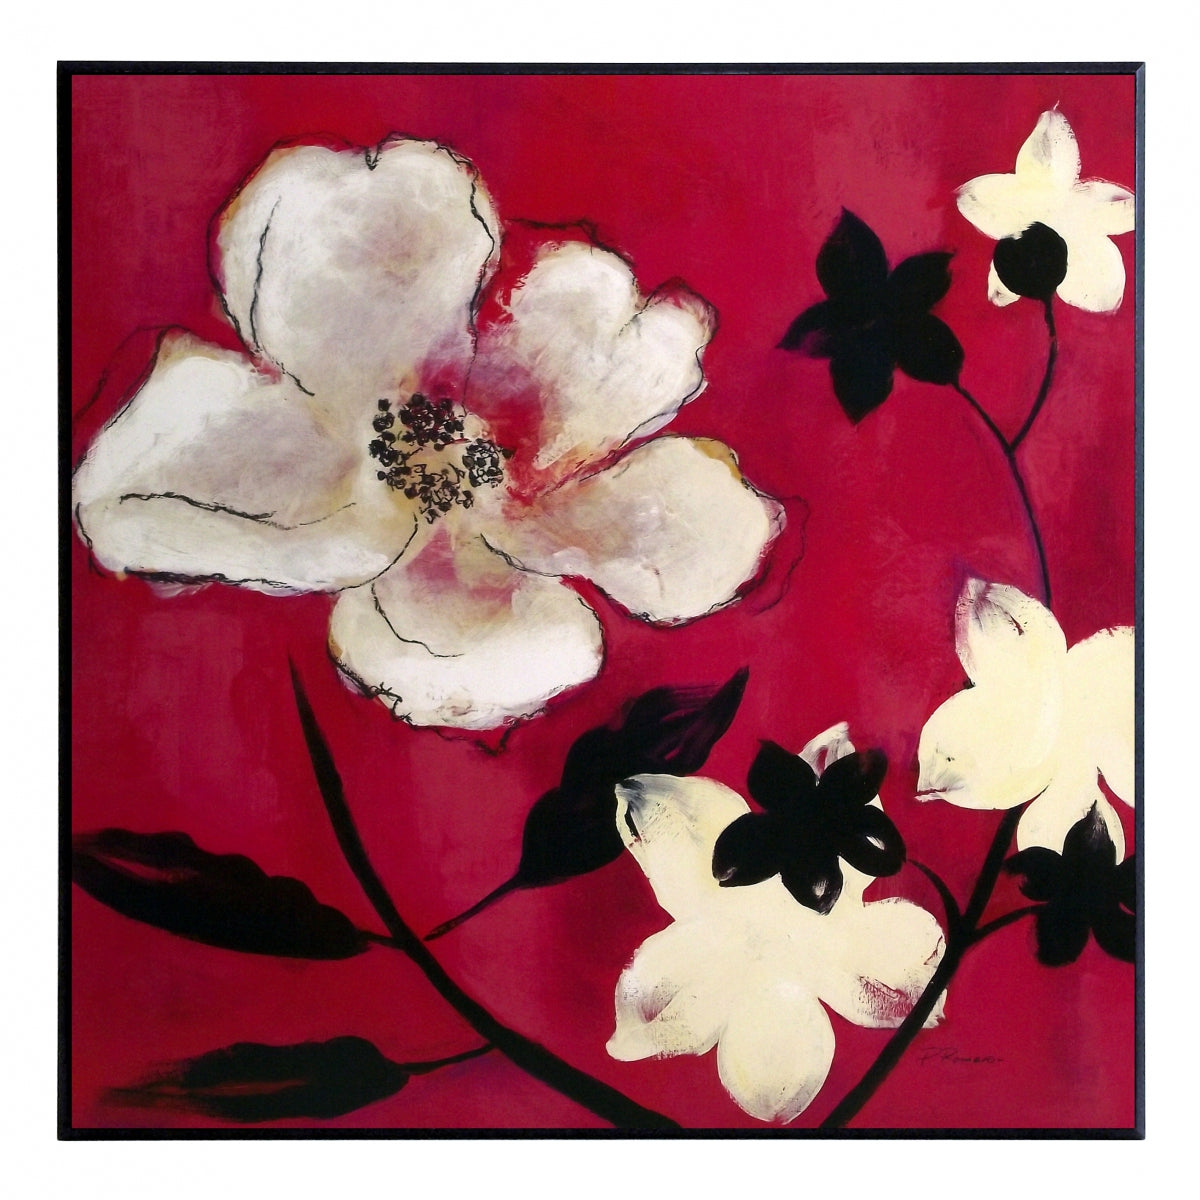 Obraz - Białe rysunkowe kwiaty na tle czerwieni - reprodukcja na płycie A5565 51x51 cm - Obrazy Reprodukcje Ramy | ergopaul.pl